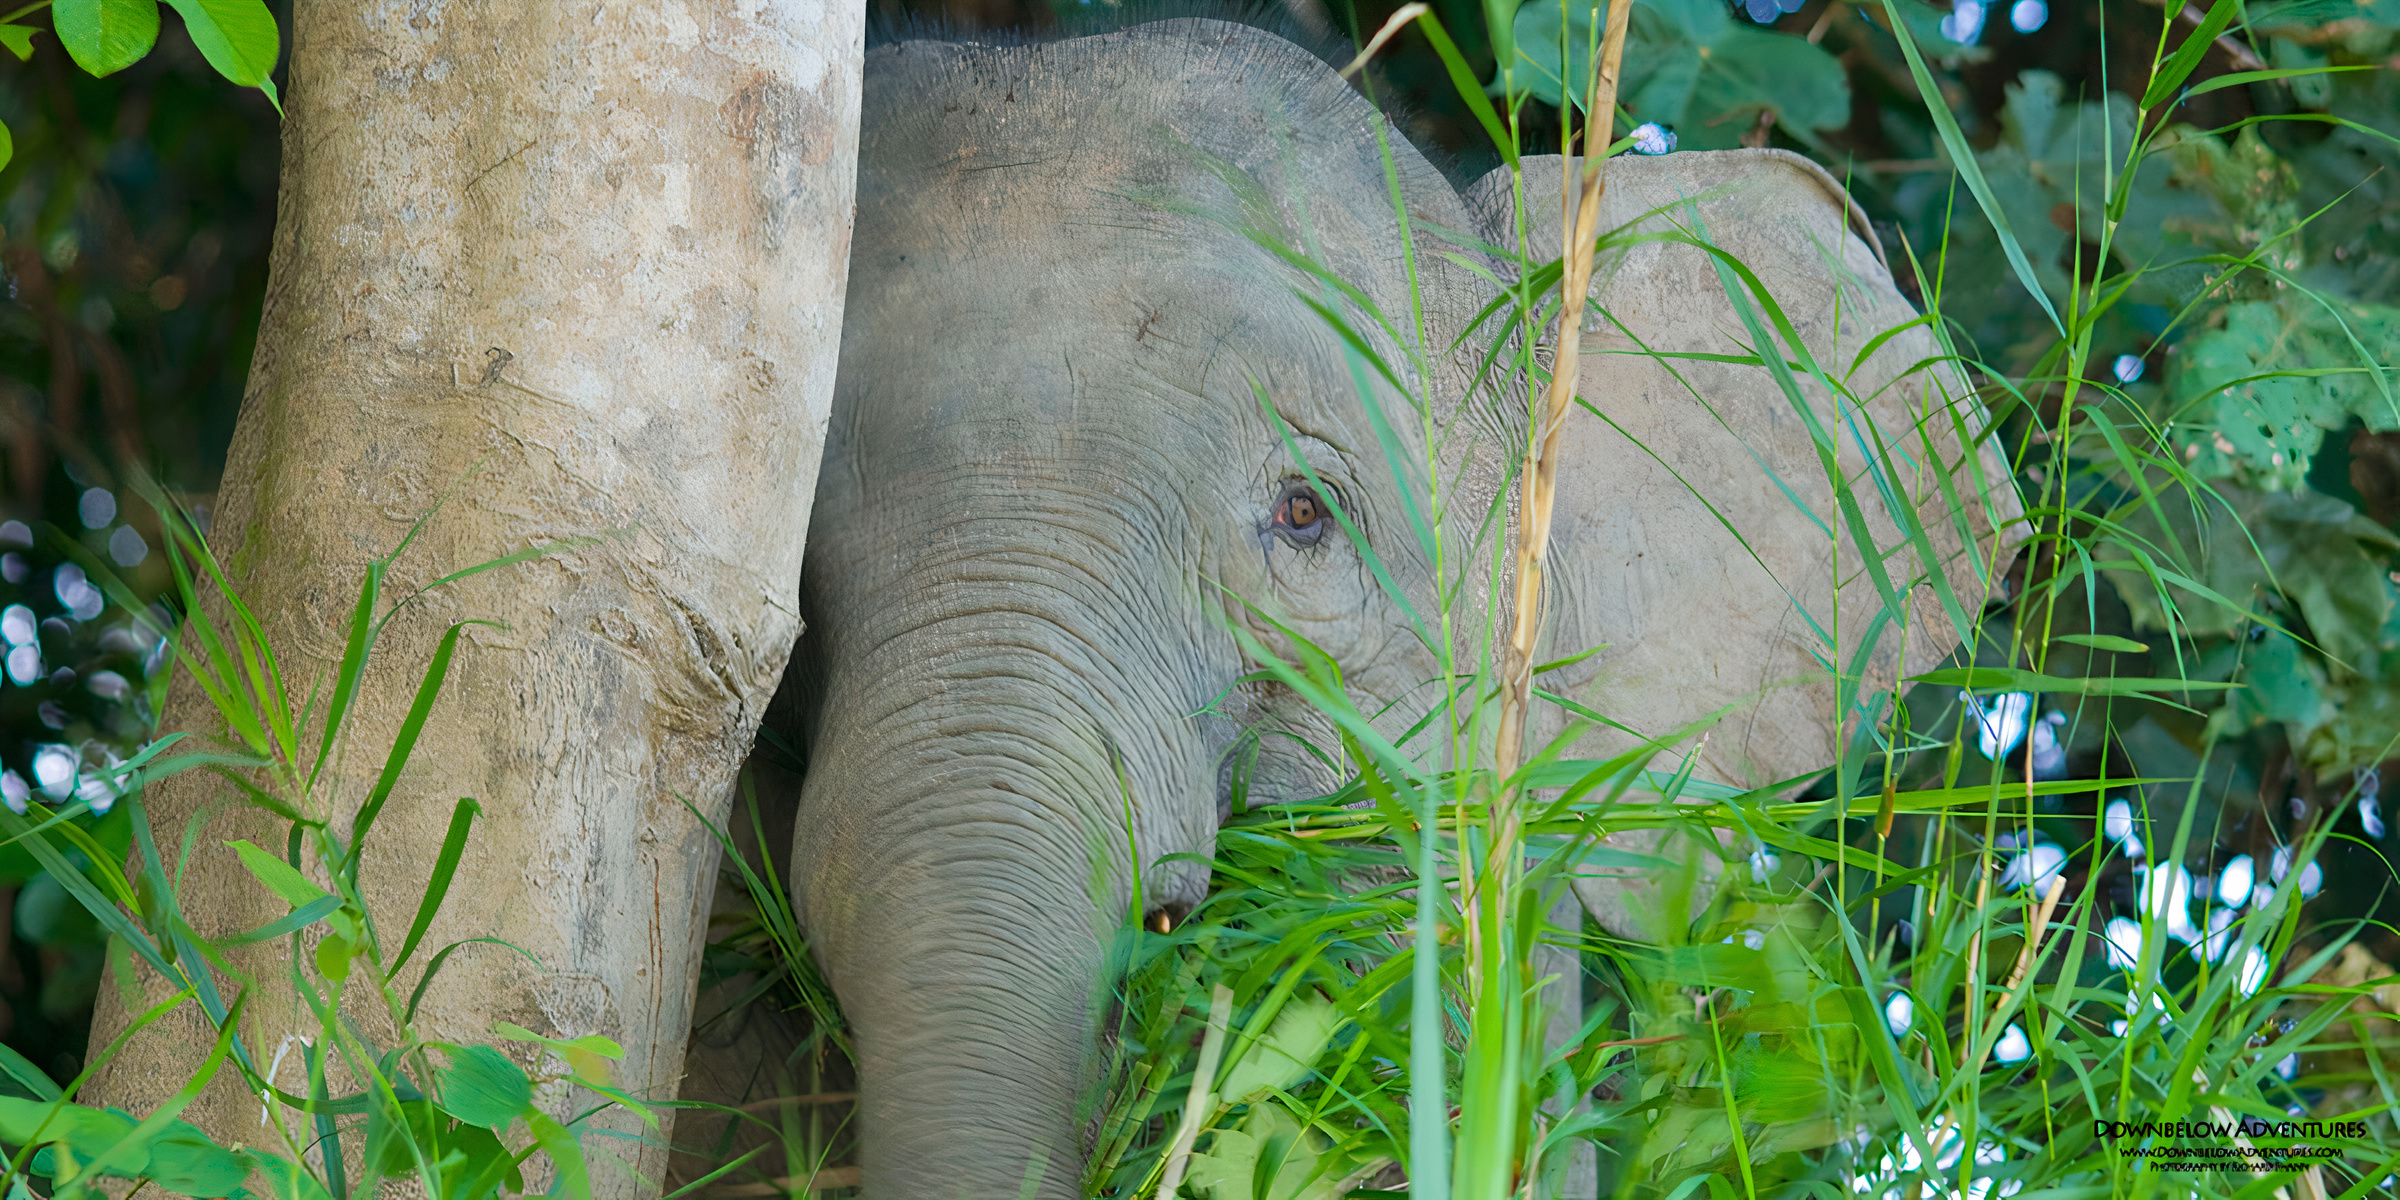 A pygmy elephant peeking from the trees.